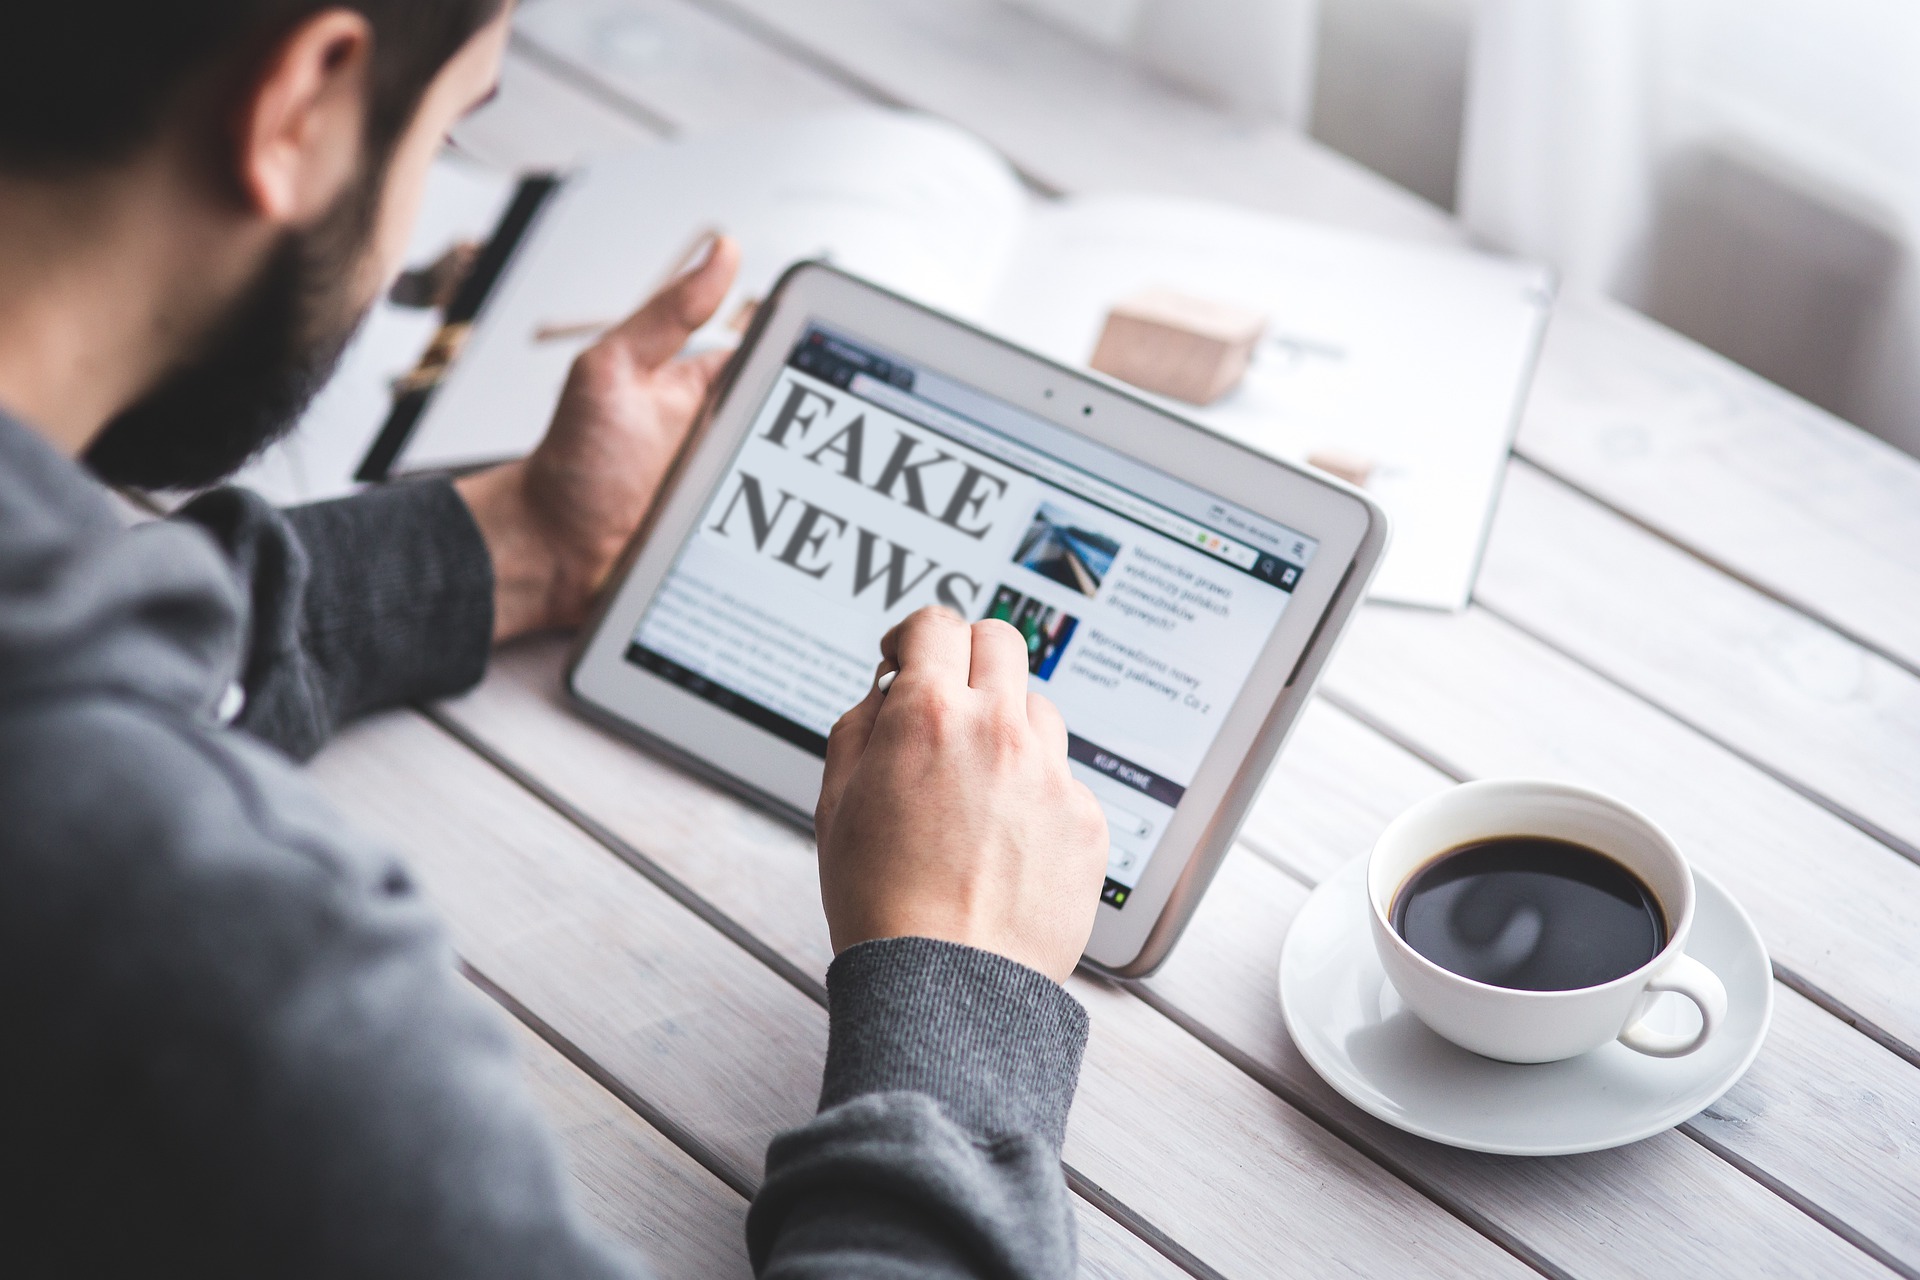 Una fotografía en la que hay un chico leyendo el periódico en una tablet mientras toma un café. En la cabecera de la noticia se puede leer "fake news"